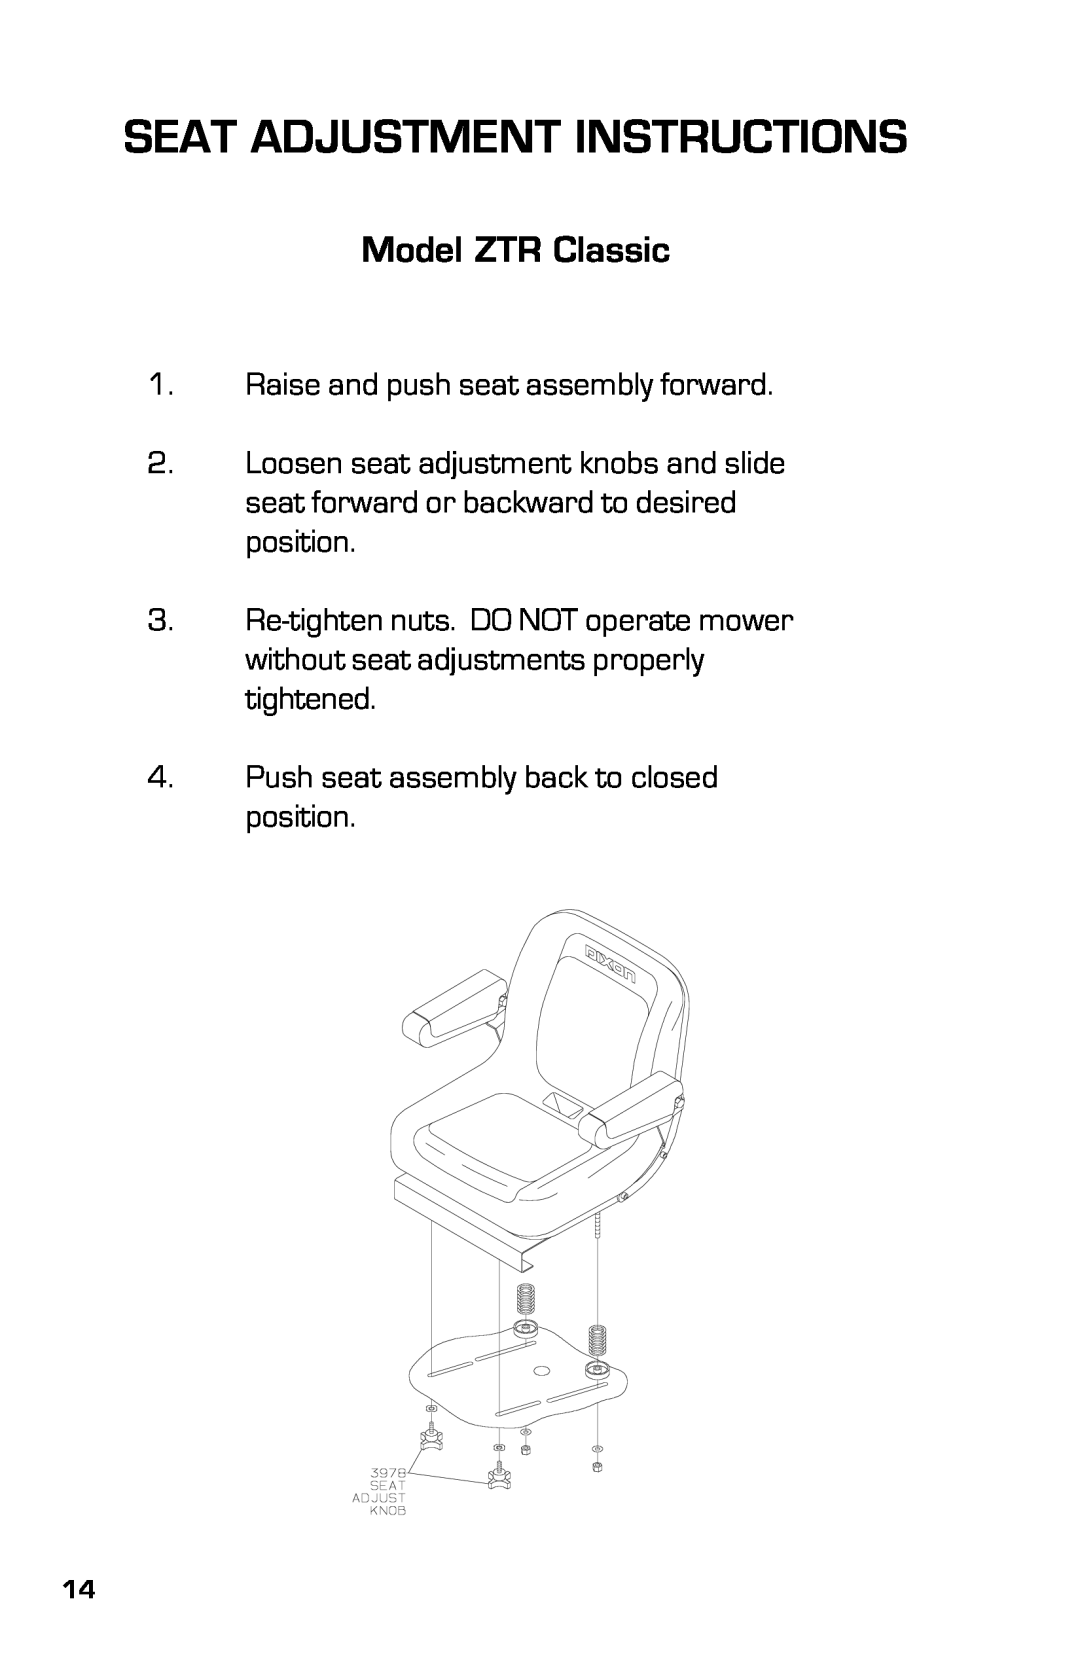 Dixon ZTRCLASSIC manual Seat Adjustment Instructions, Model ZTR Classic 